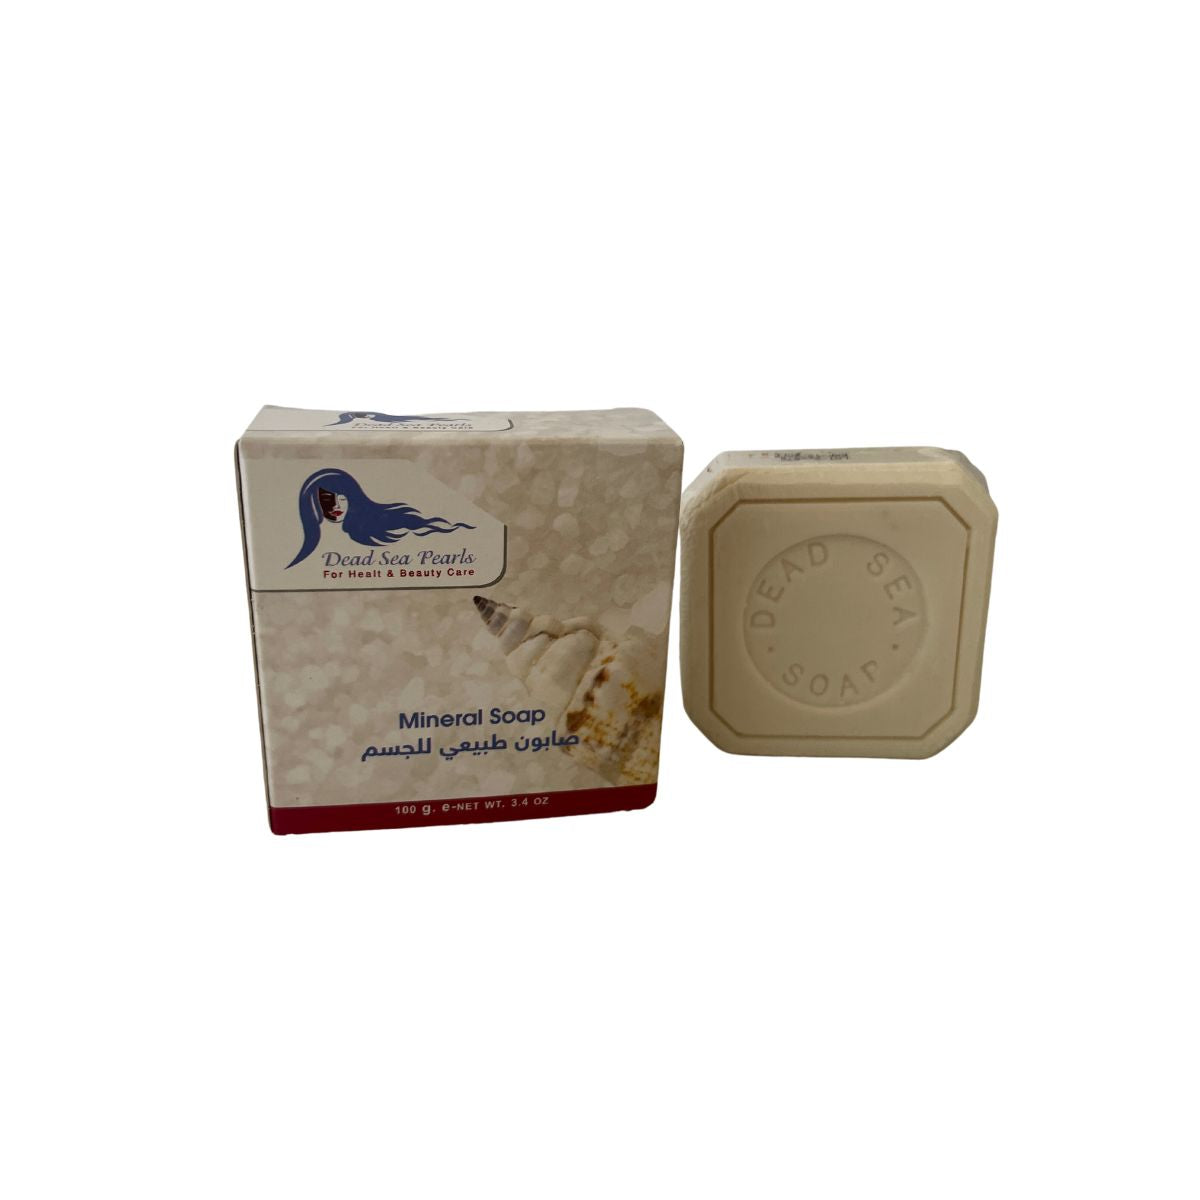 Dead Sea Mineral Soap